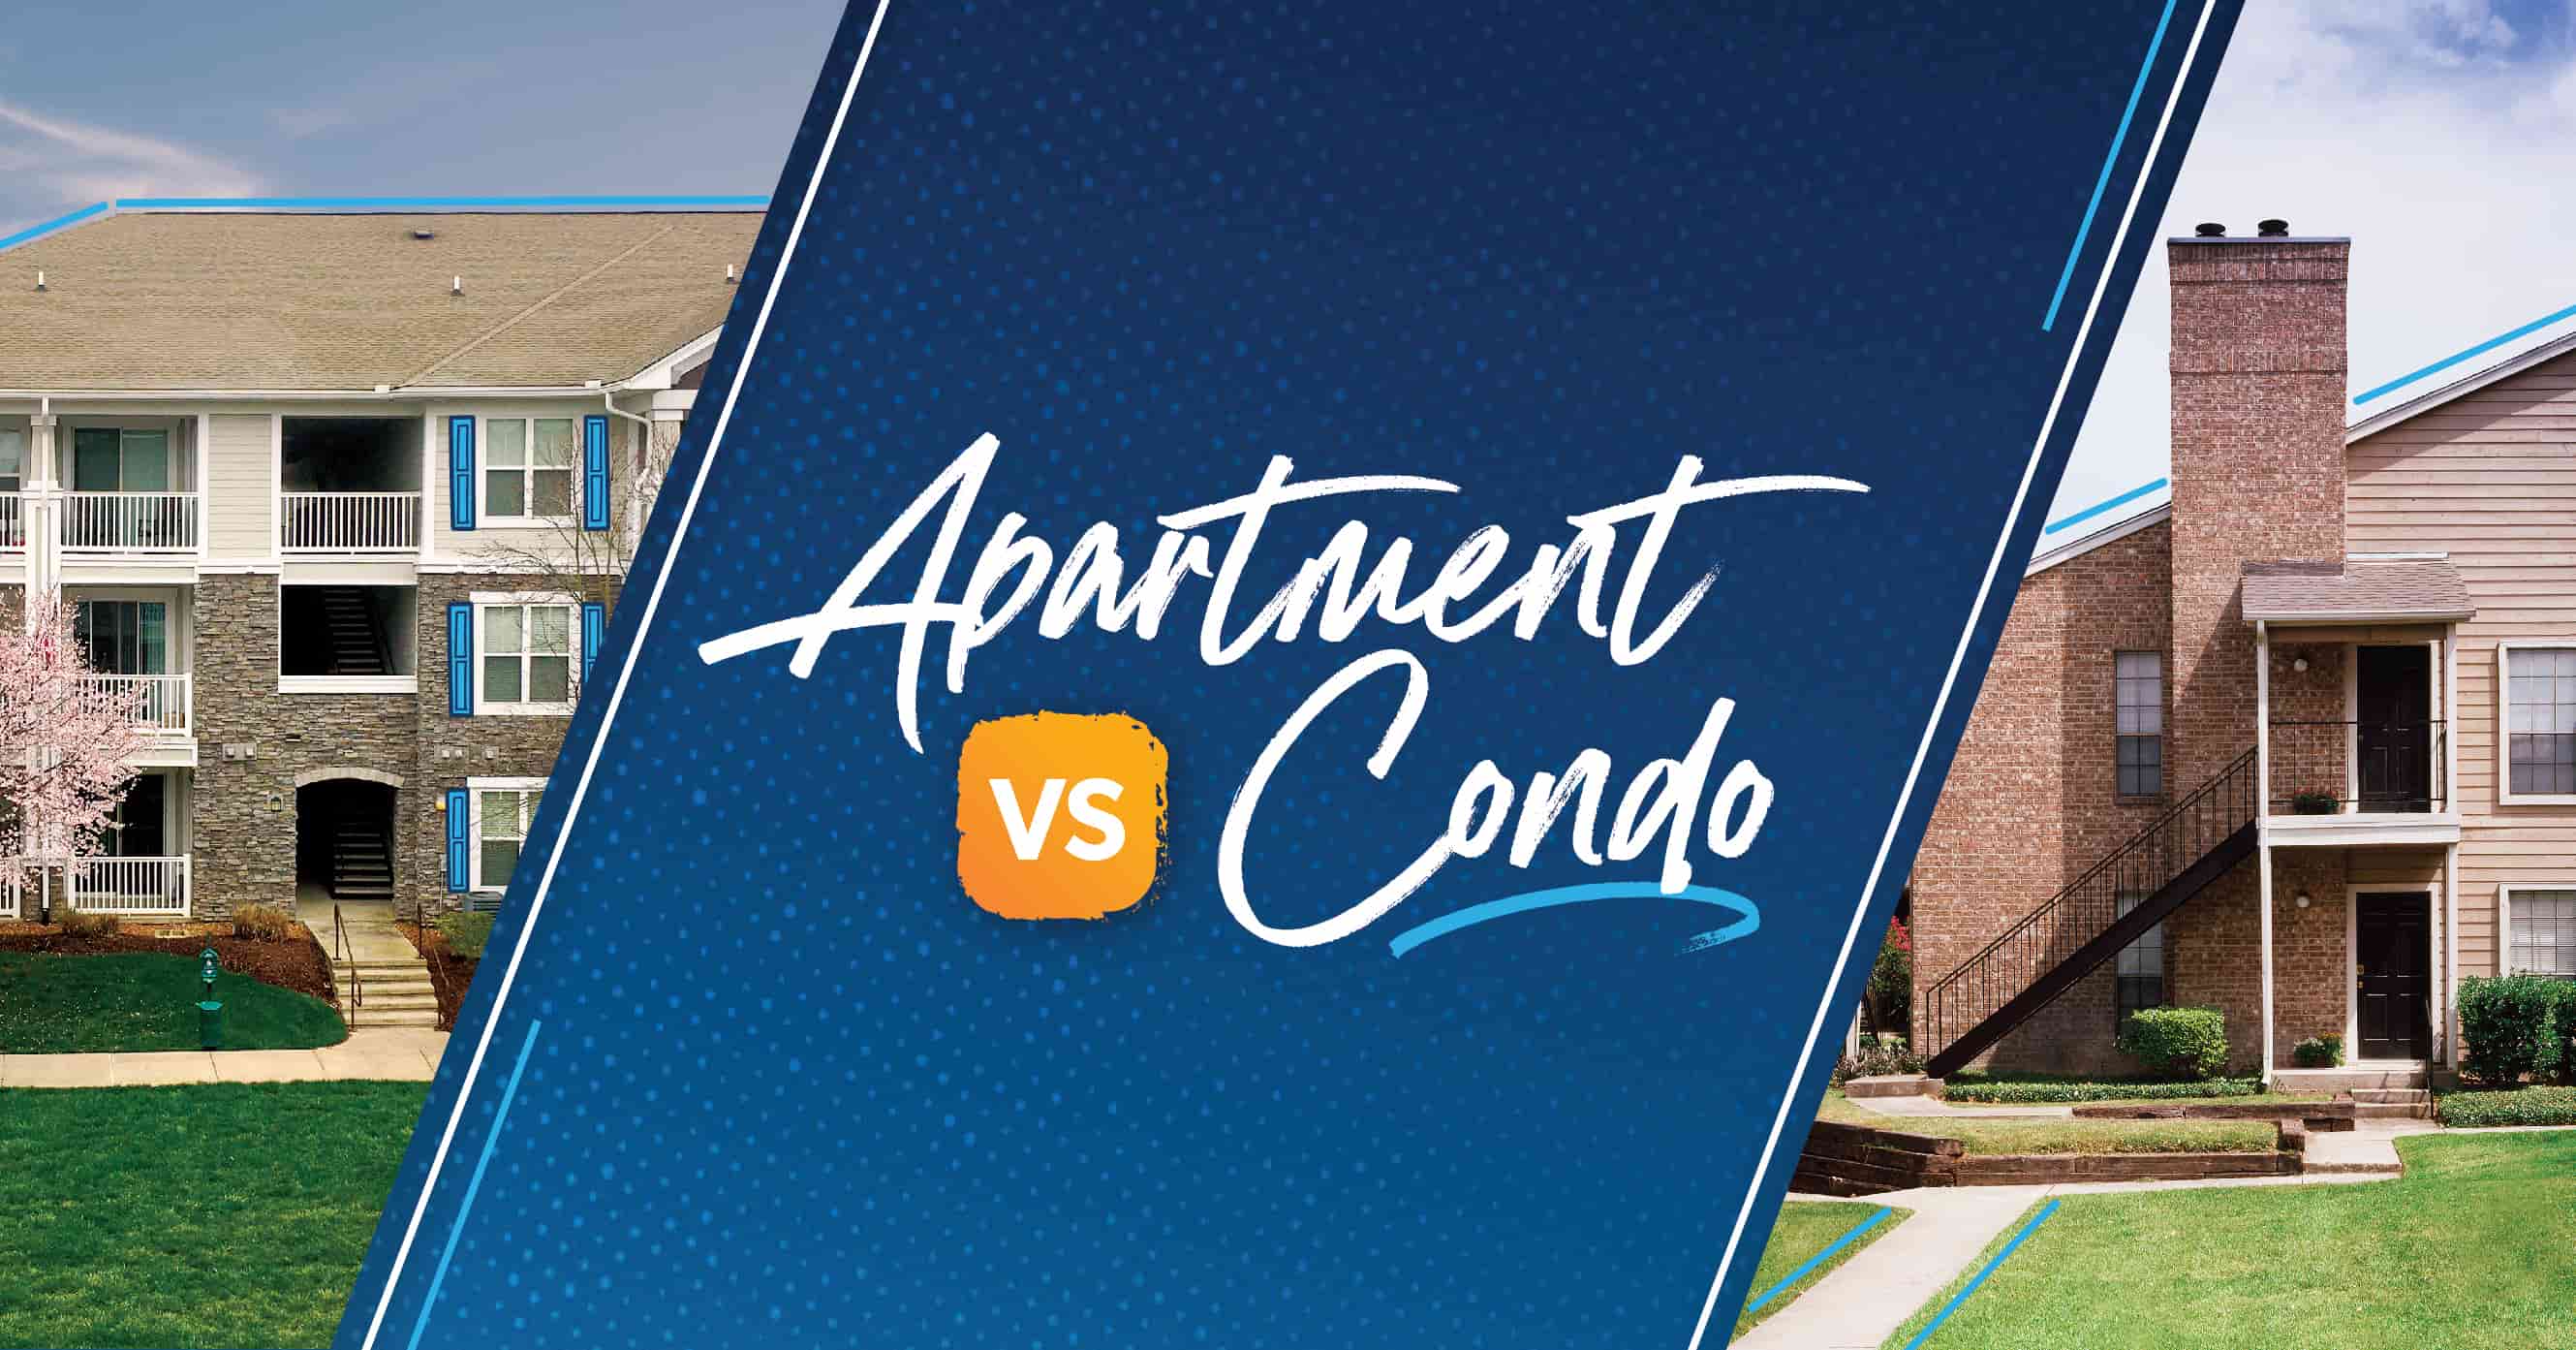 condo vs apartment